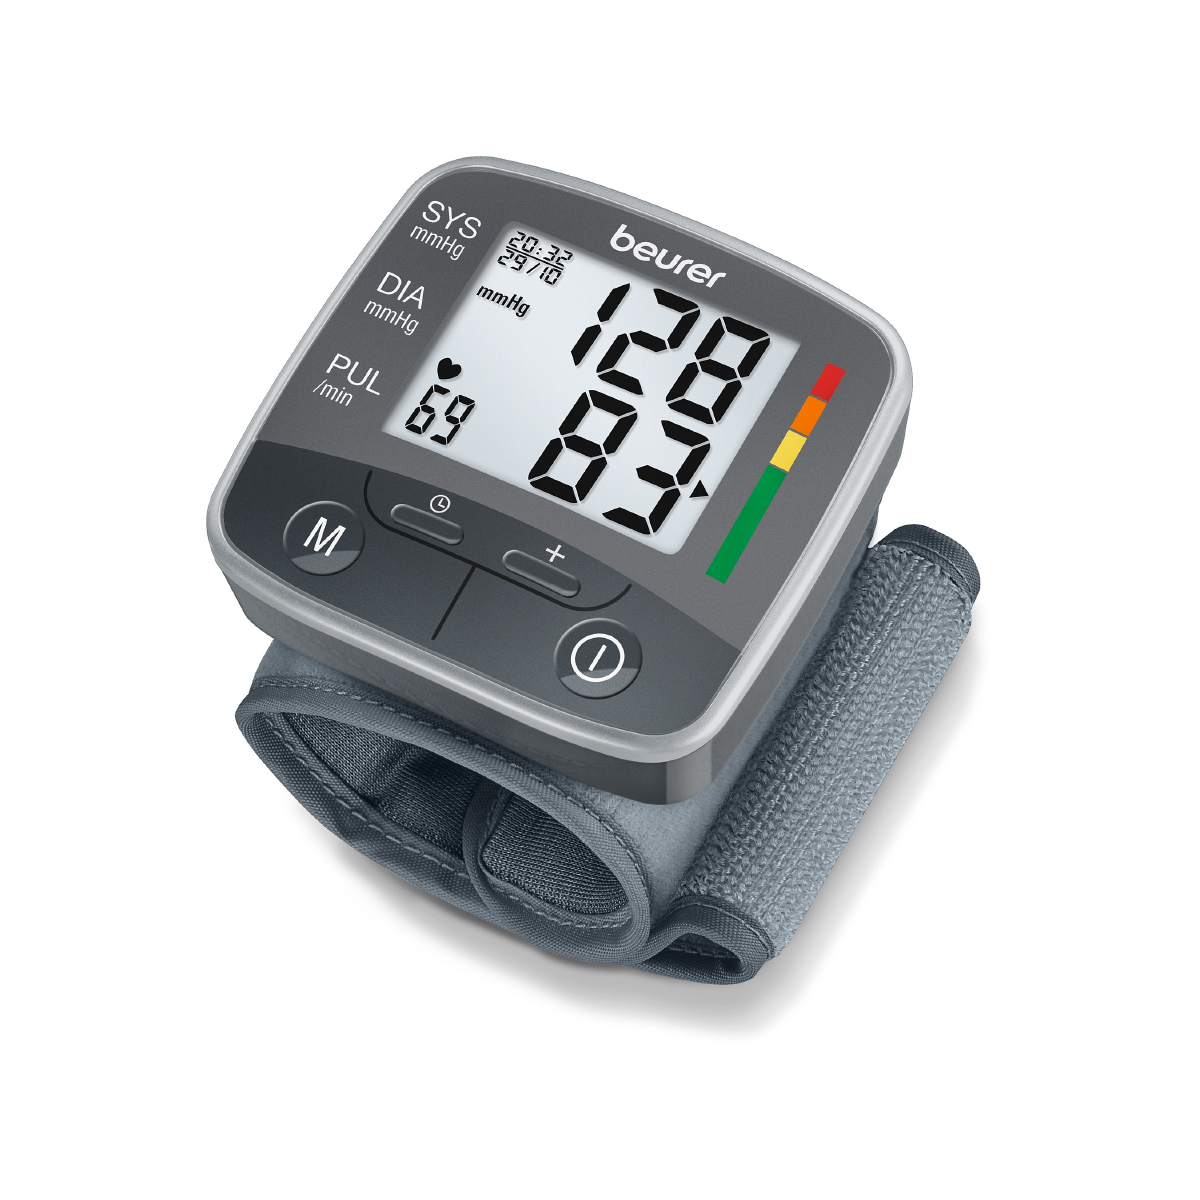 Monitor de presión arterial baumanómetro digital de muñeca con detector de arritmias BC32 Marca Beurer